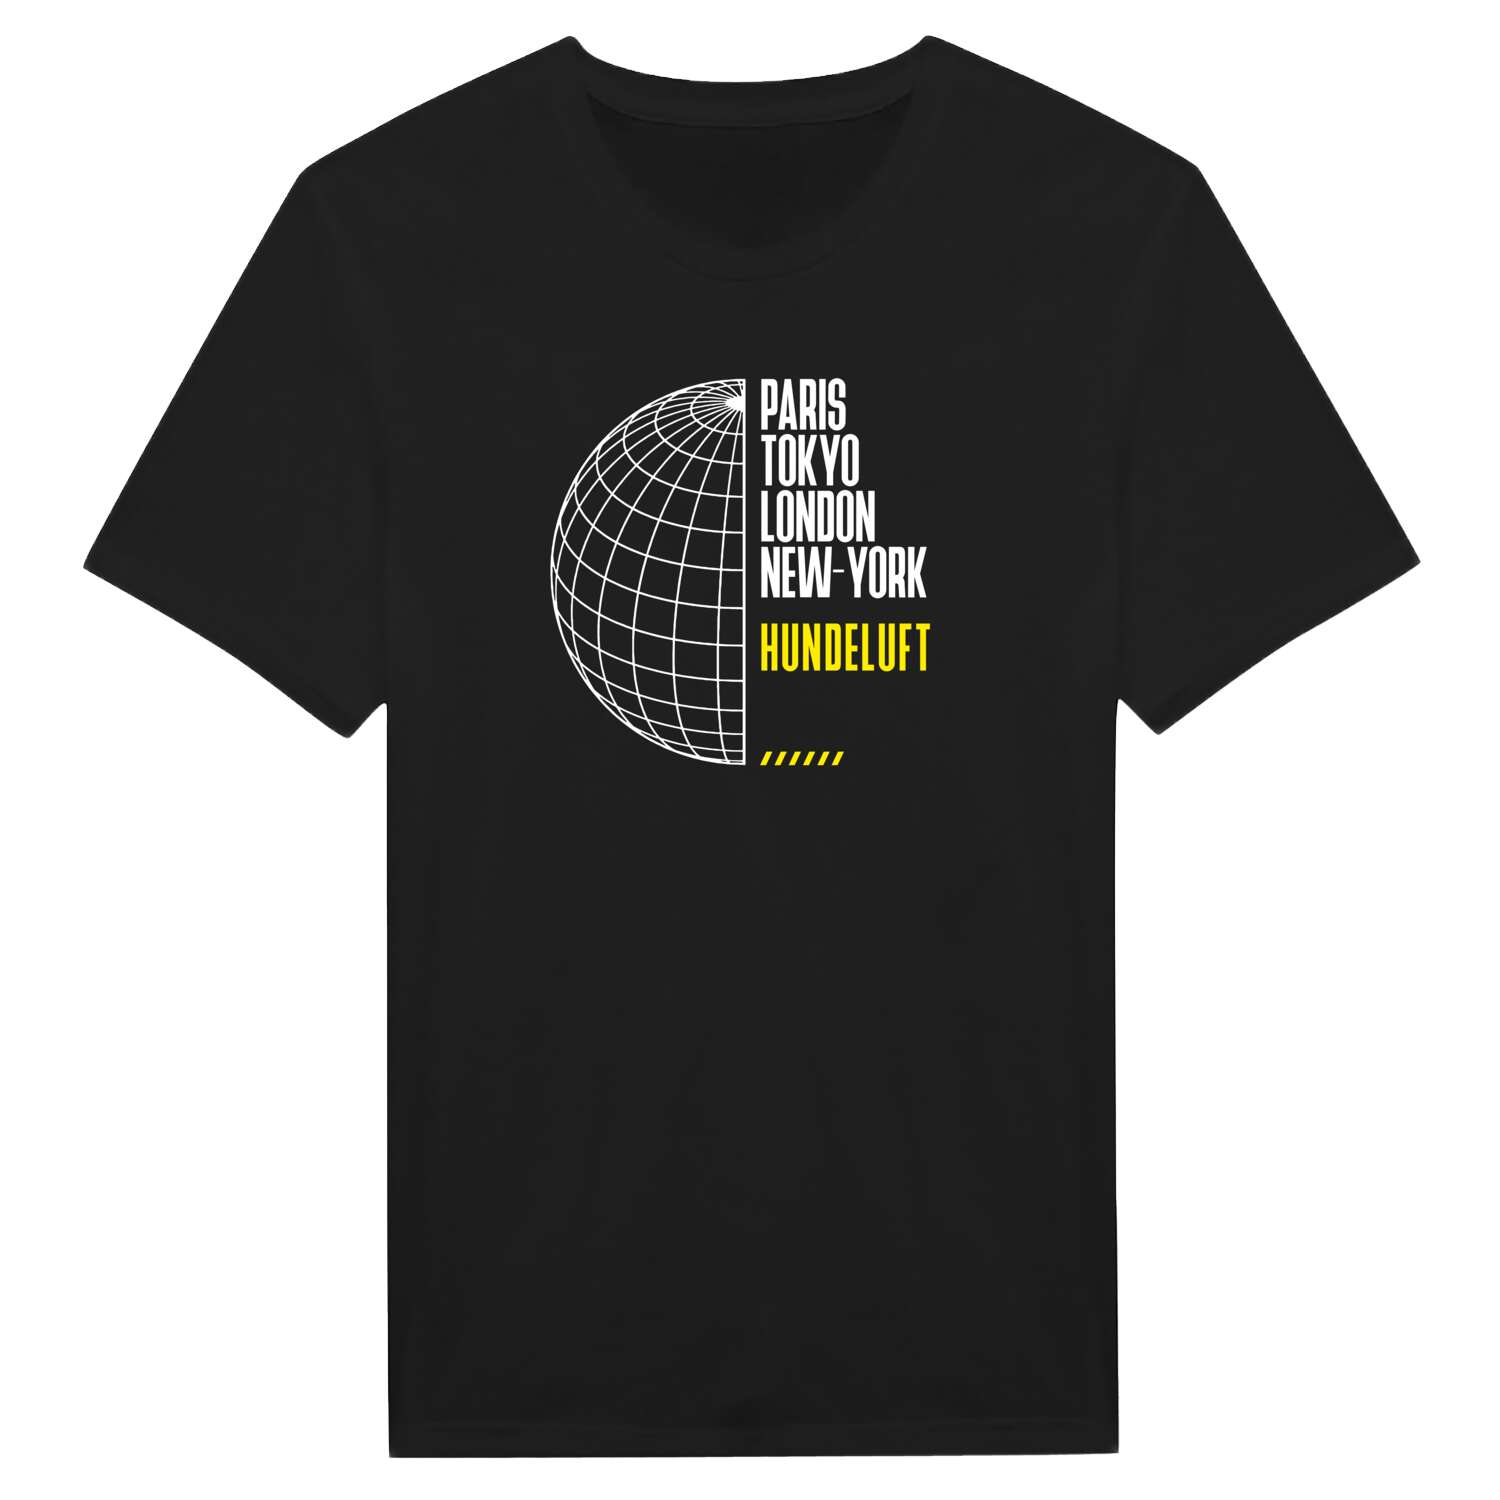 Hundeluft T-Shirt »Paris Tokyo London«